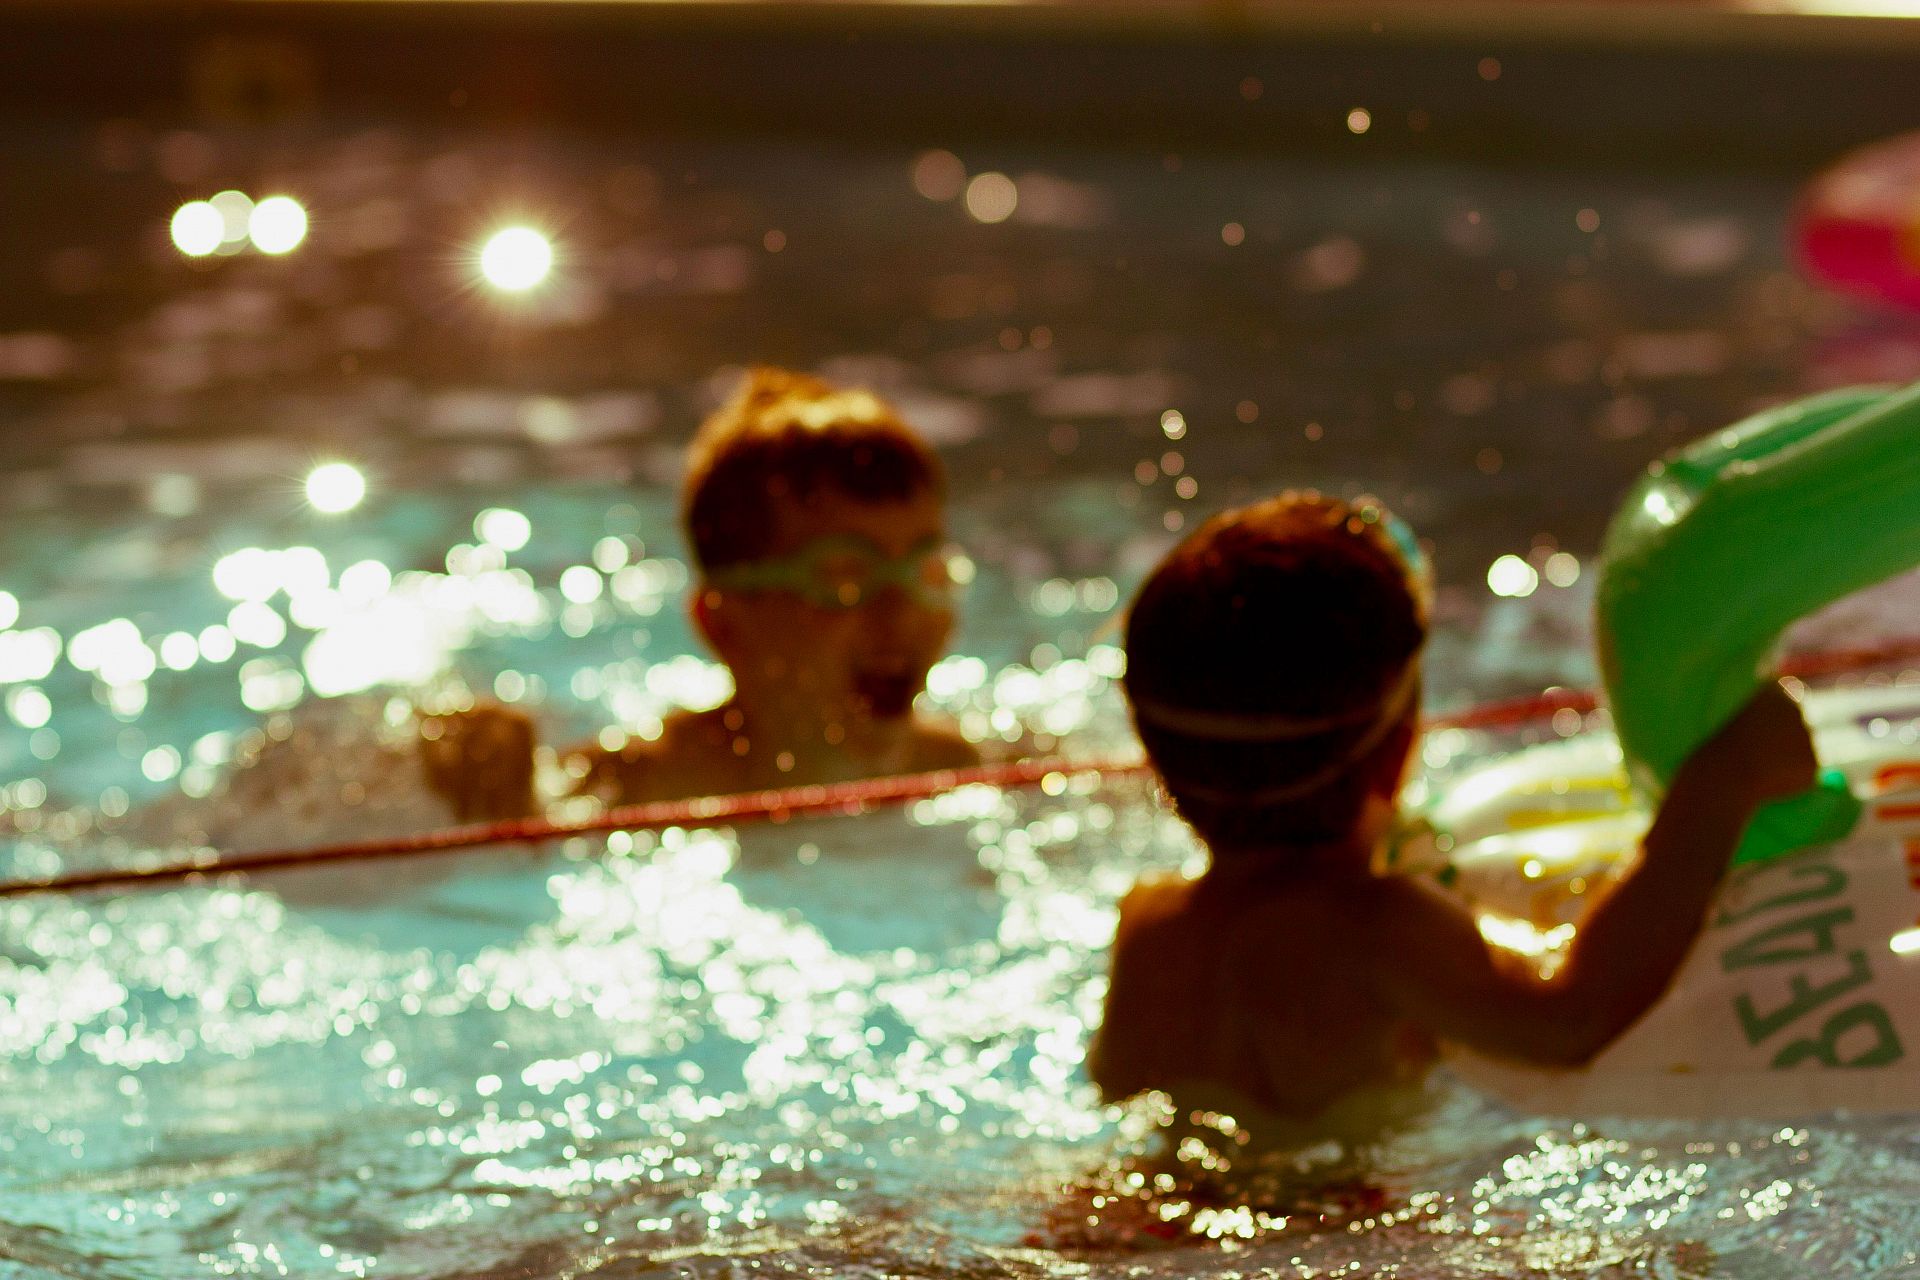 Diversão segura na piscina e praia: cuidados essenciais para diversão ao sol com as crianças